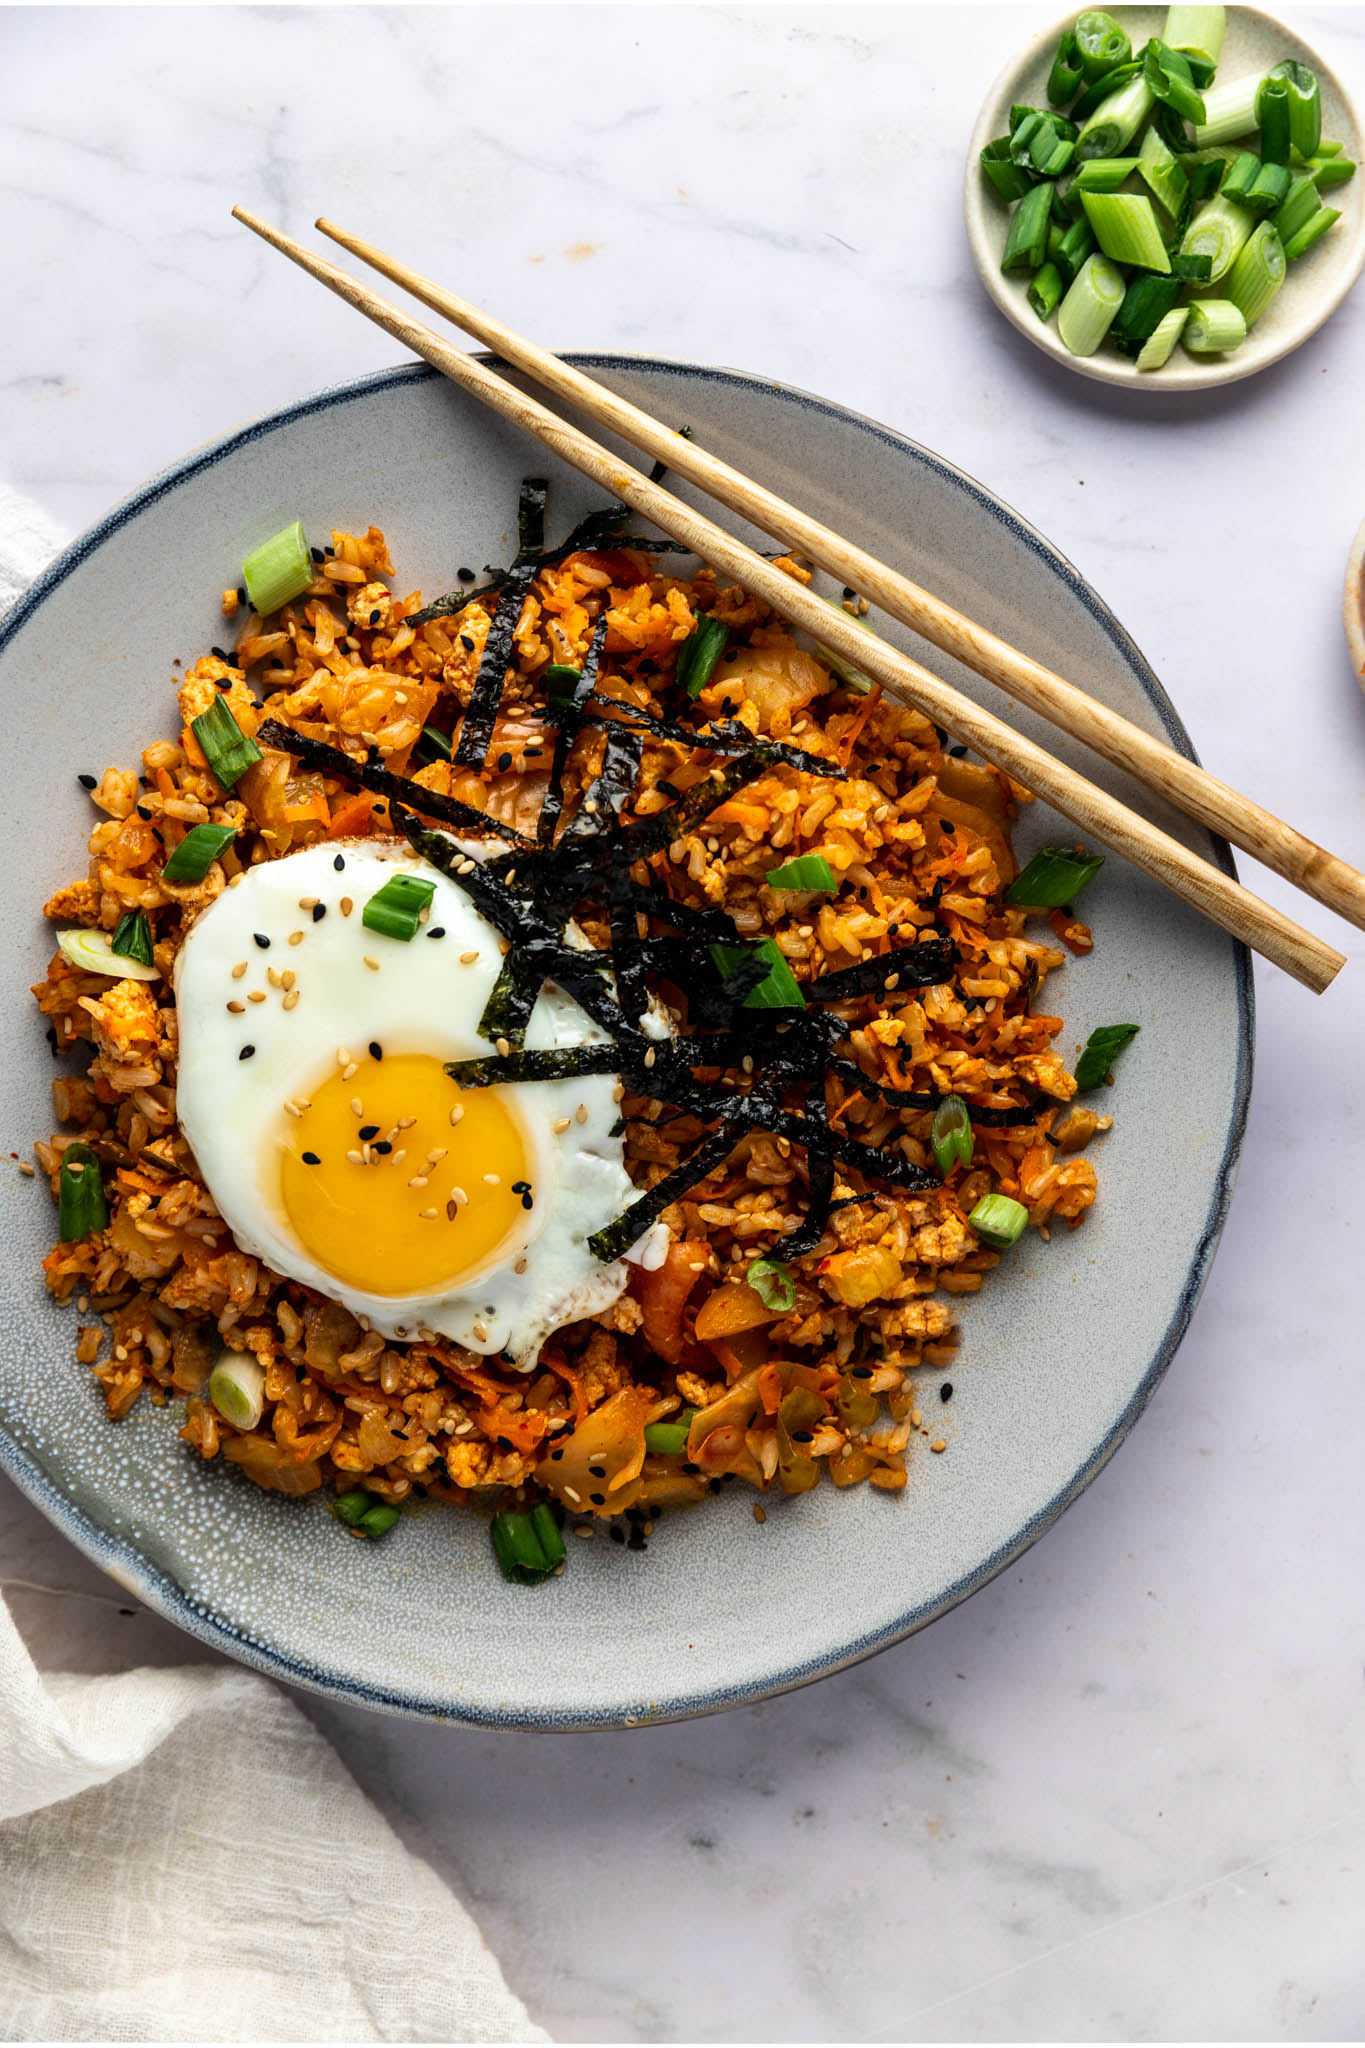 Recette - Recette pour Rice Cooker : Riz au Porc et Kimchi